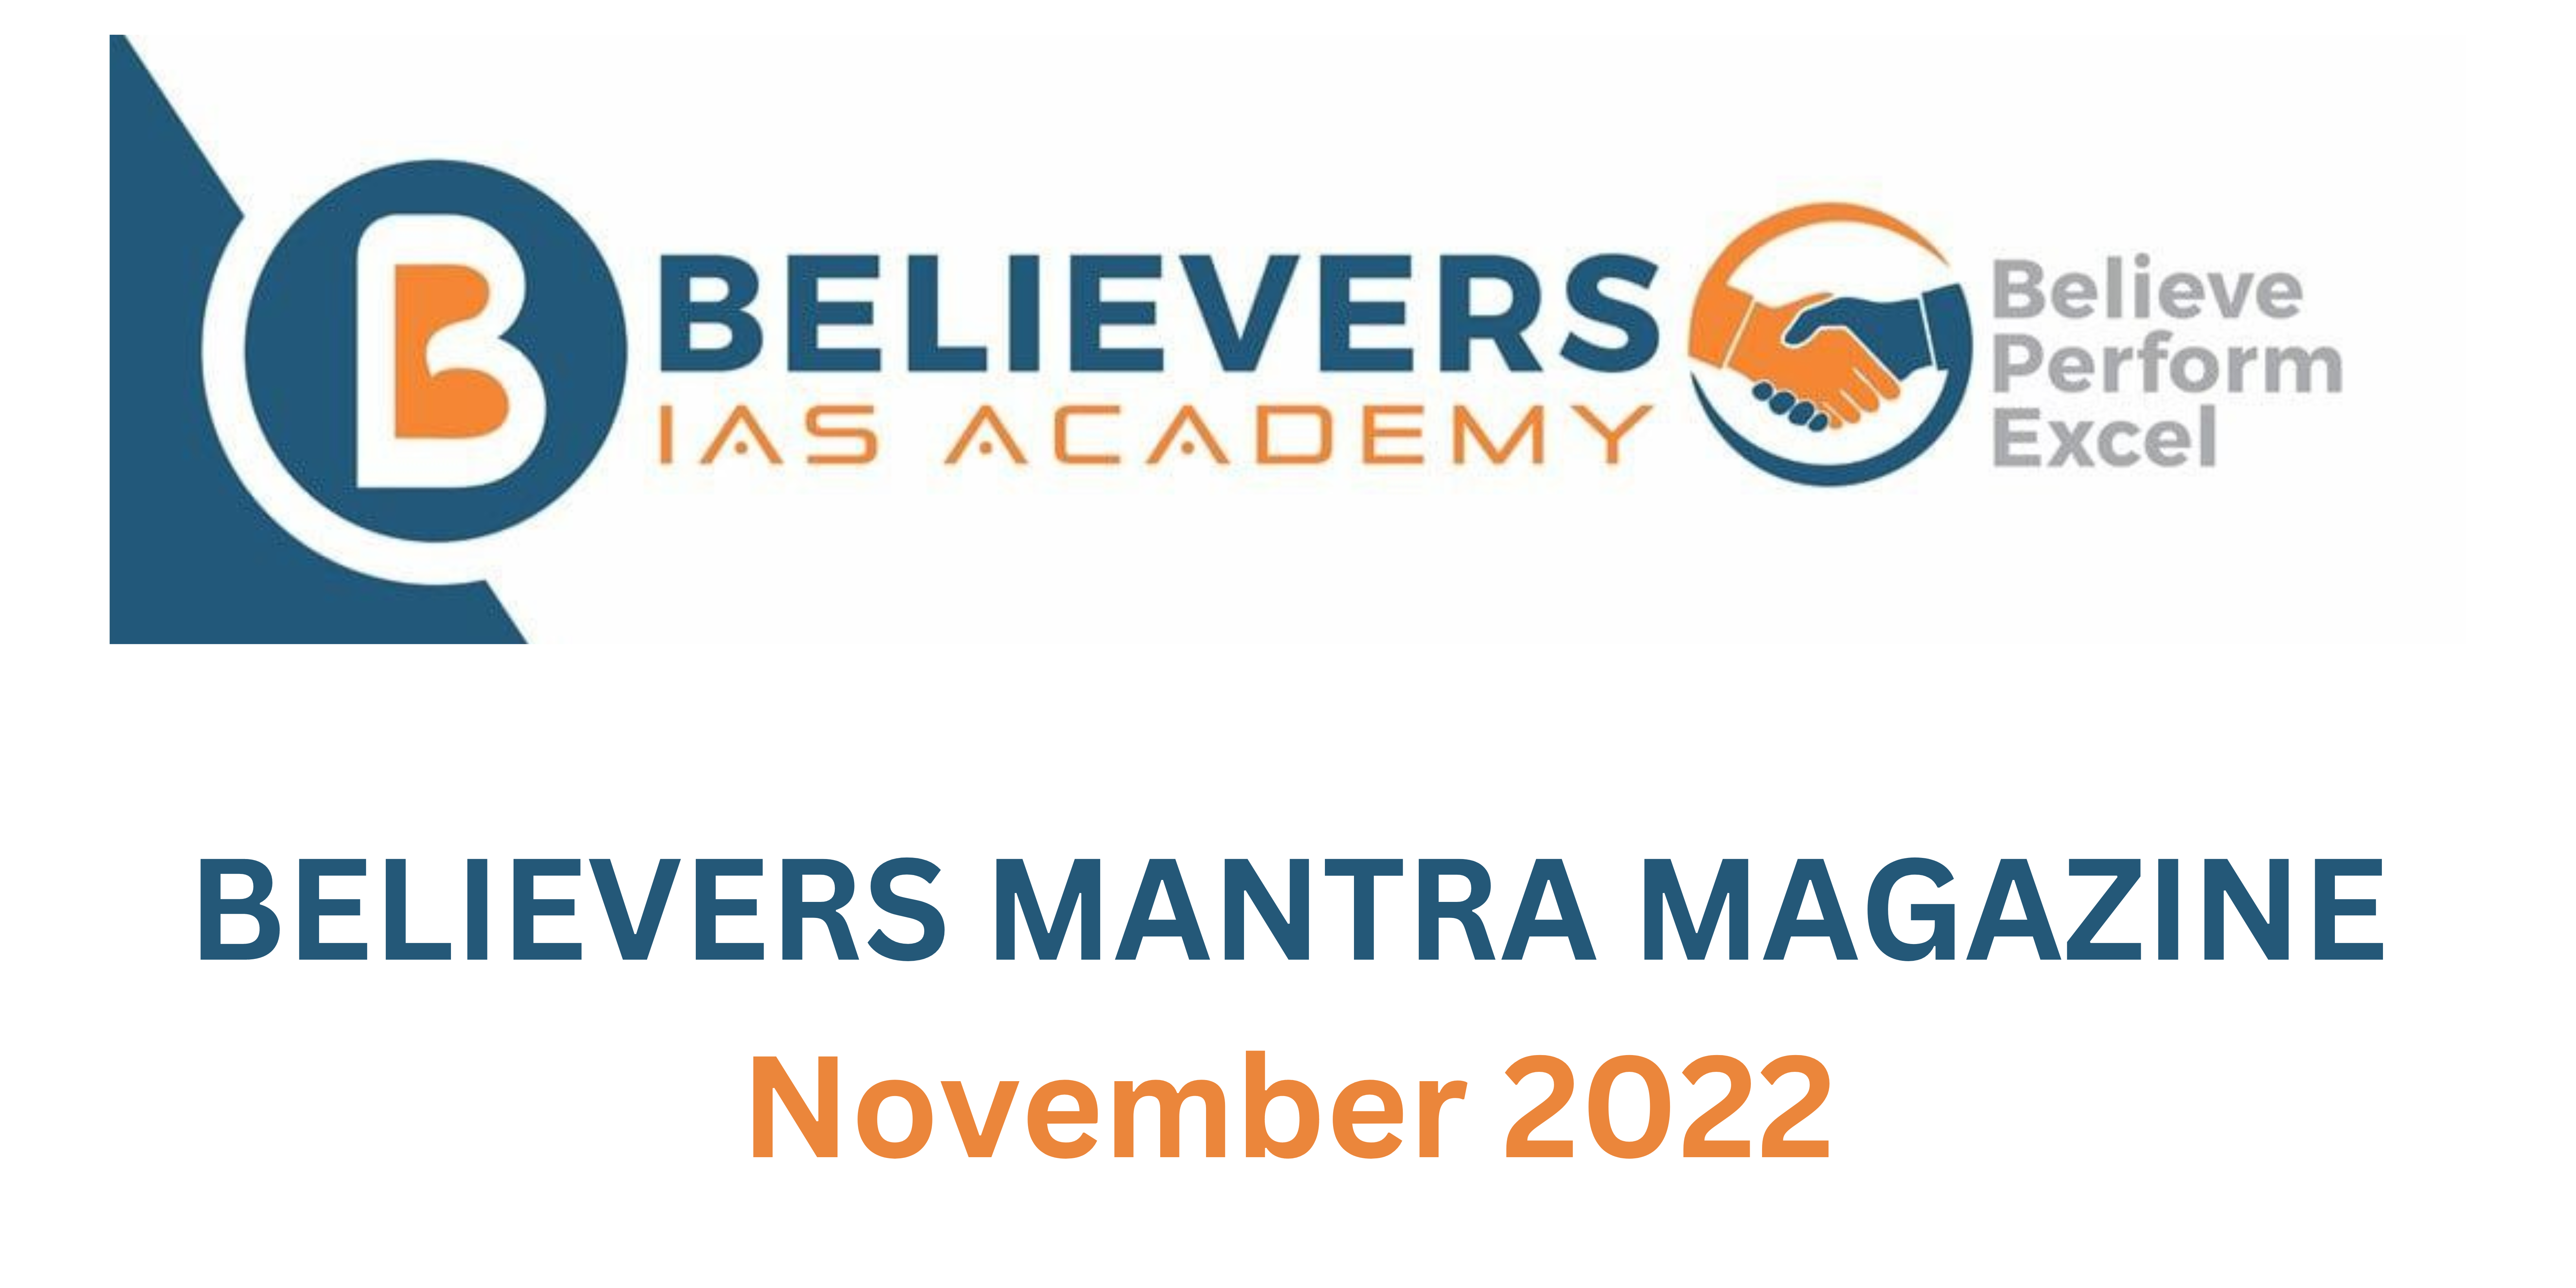 Believers Mantra Magazine - 2022